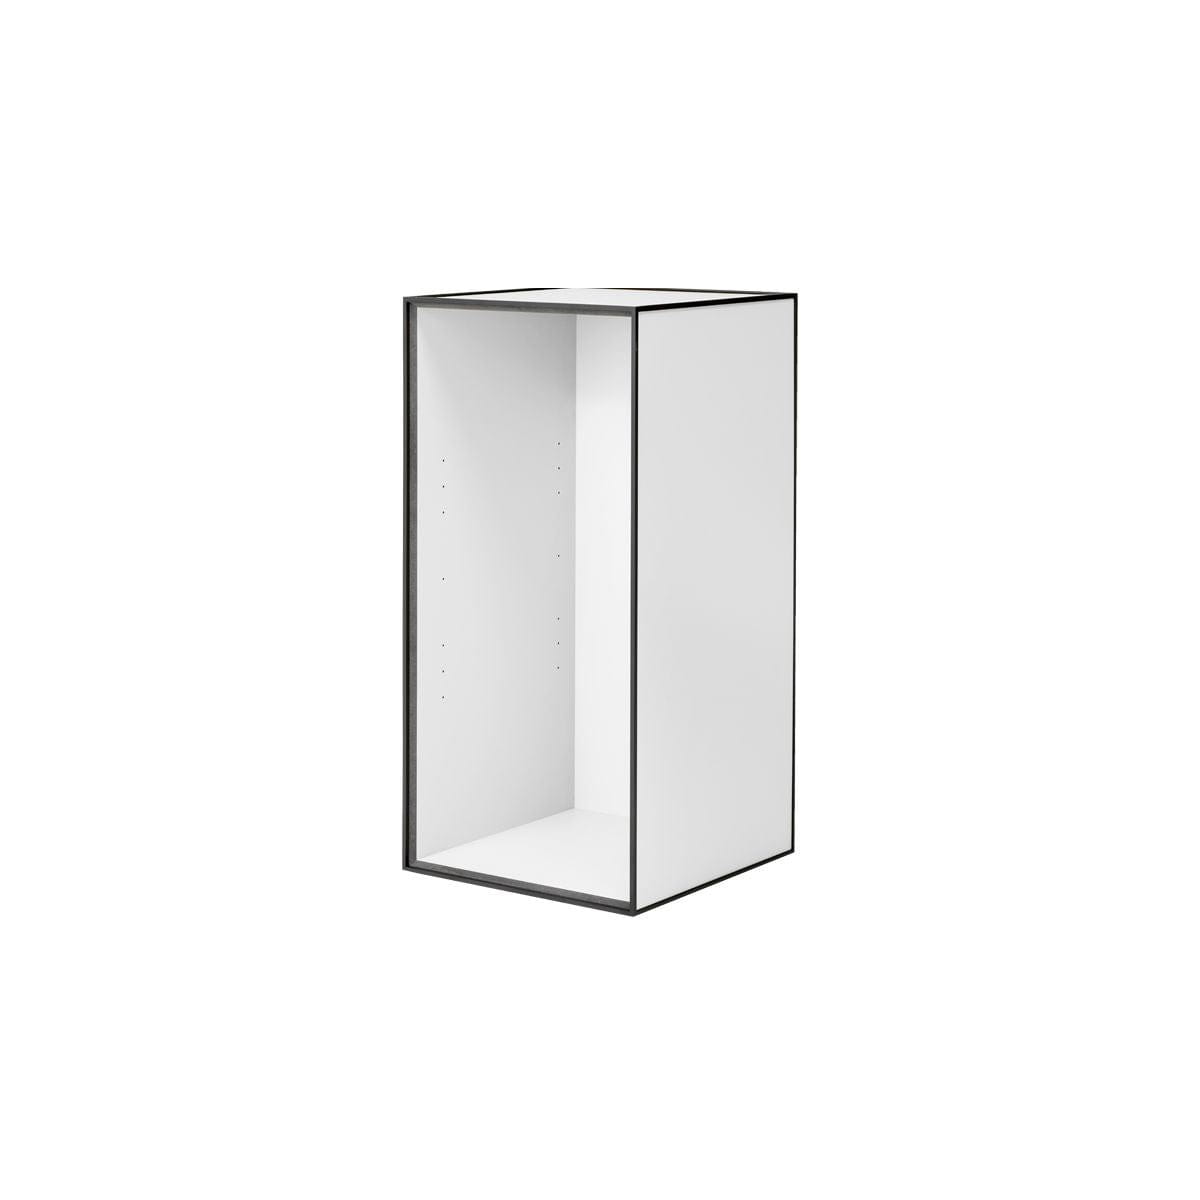 Audo Copenhagen Frame 70 With 2 Shelves, White